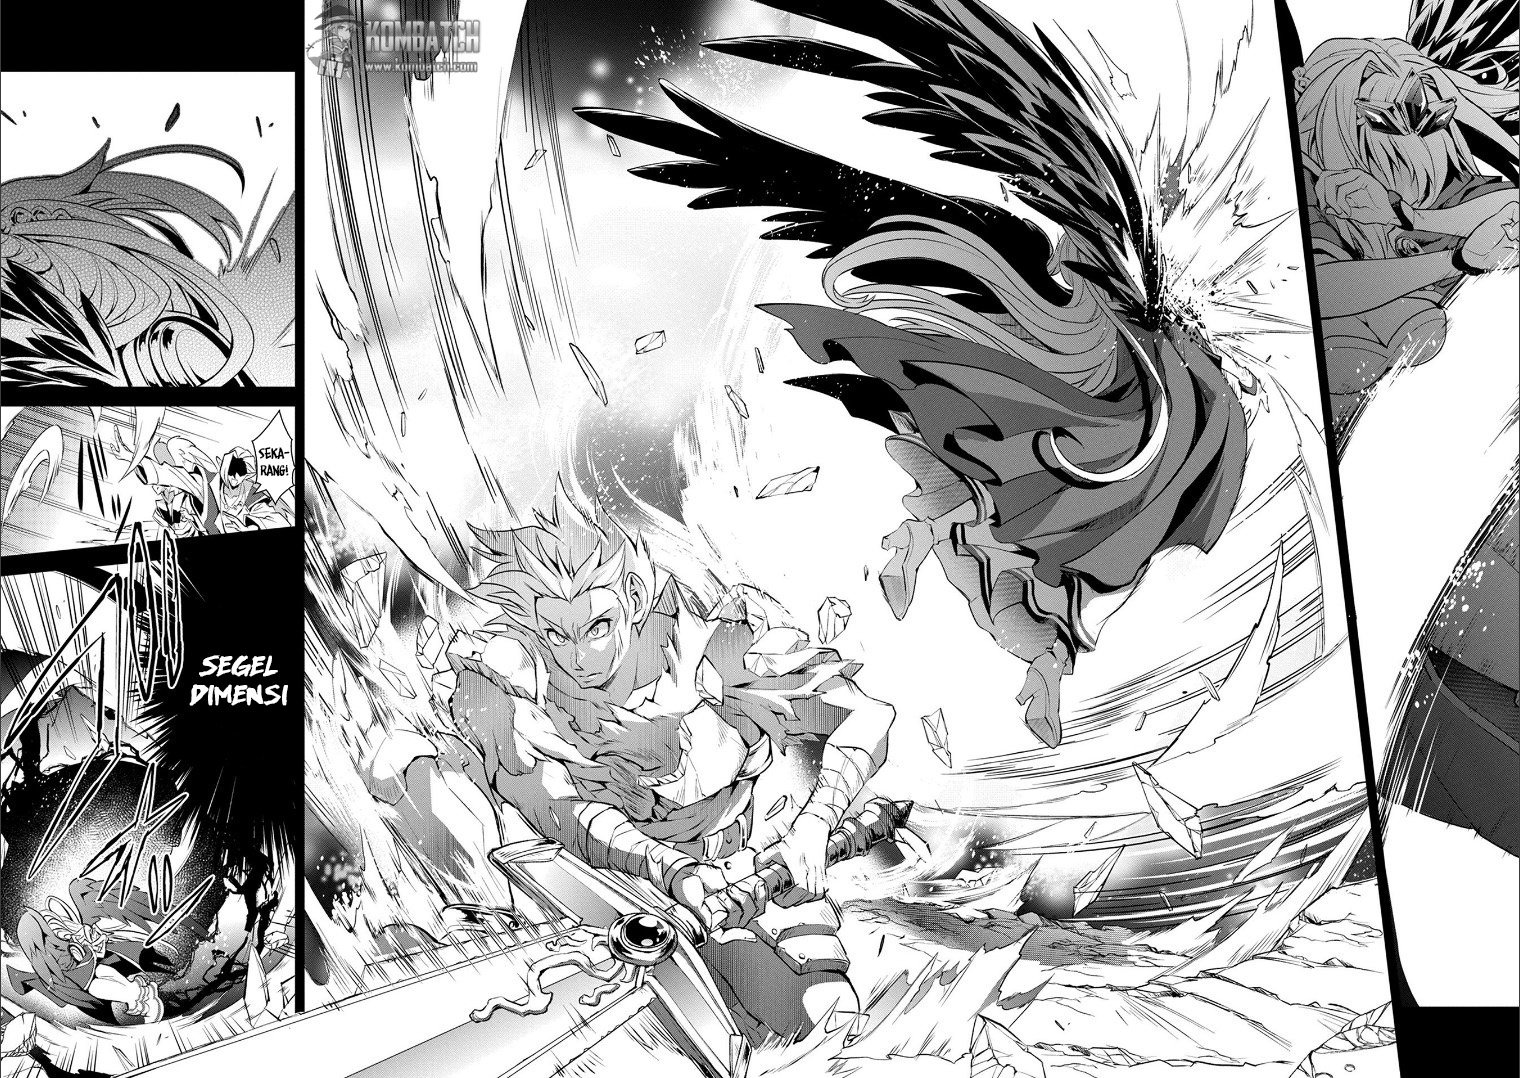 Baca Yasei no Last Boss ga Arawareta Chapter 1  - GudangKomik